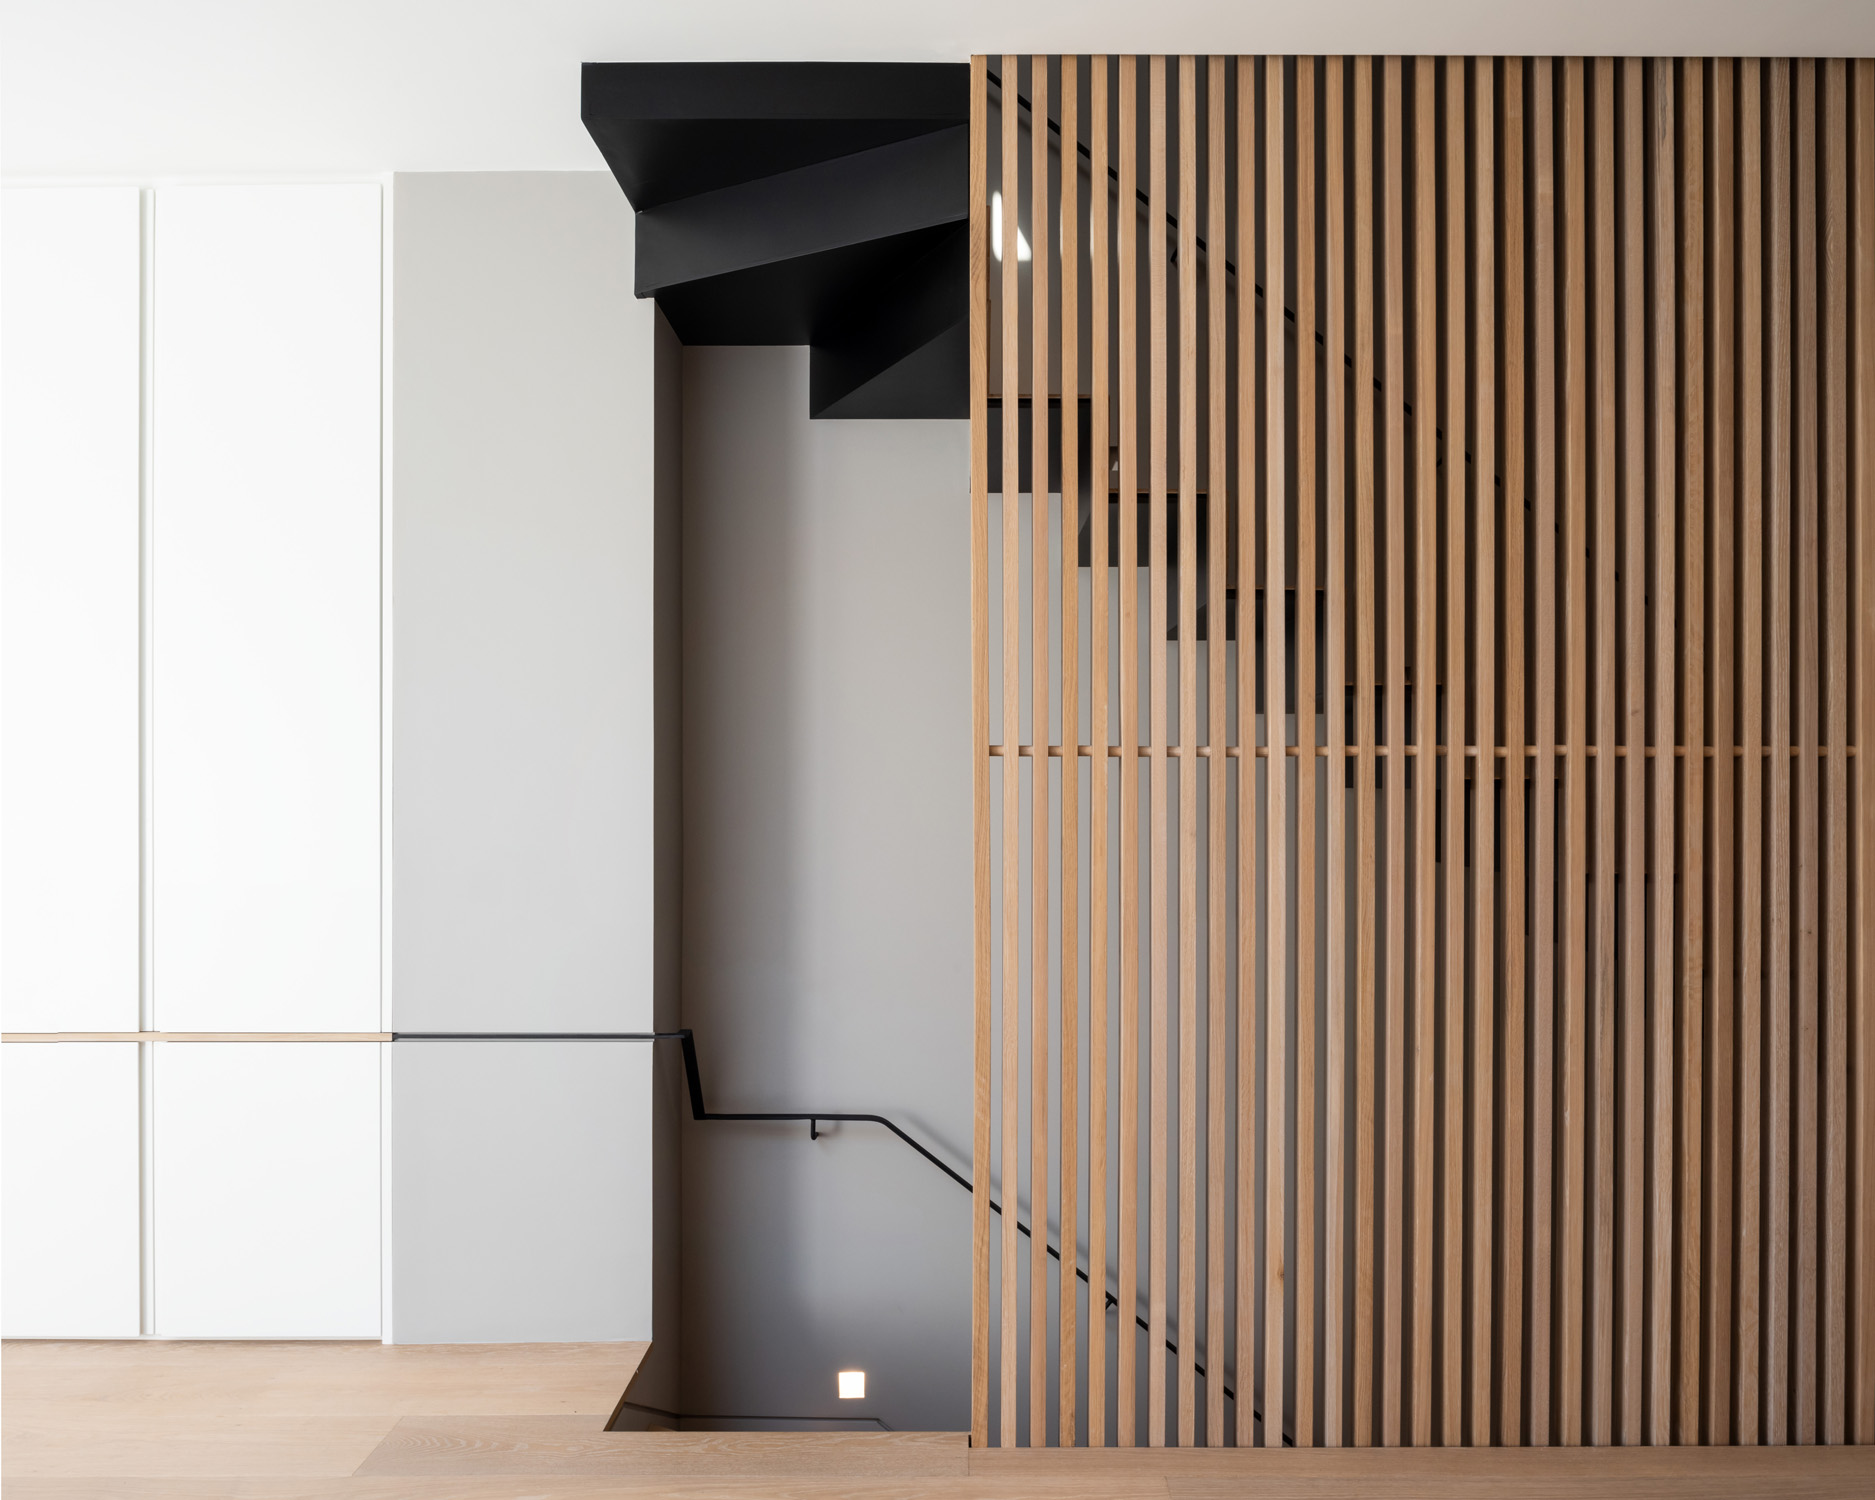 Escalera de Tigg + Coll Architects